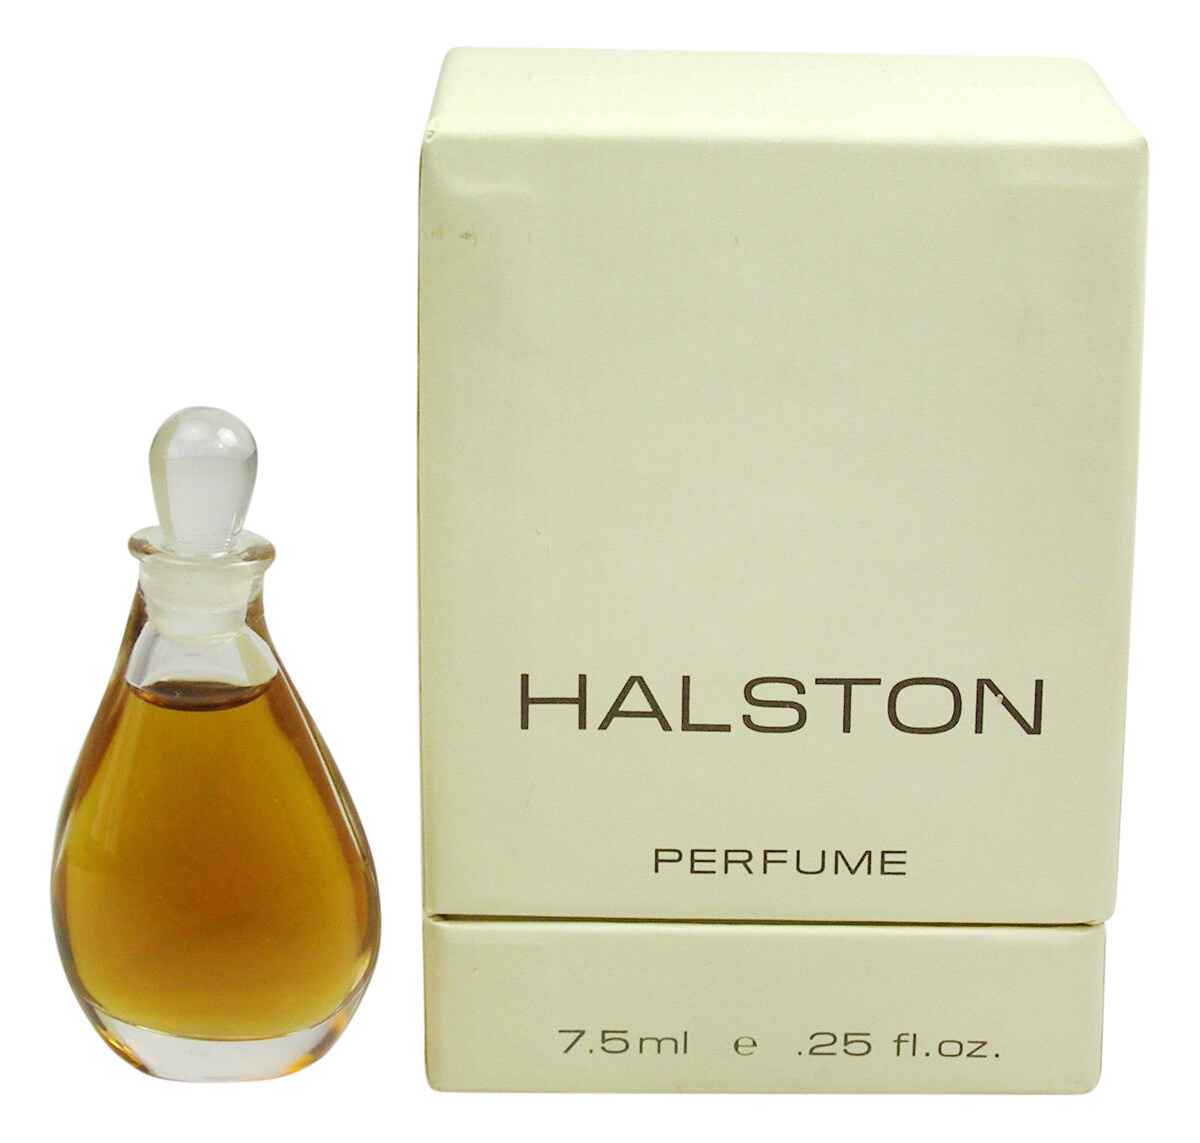 Halston - Perfume (Perfume) » Reviews ...